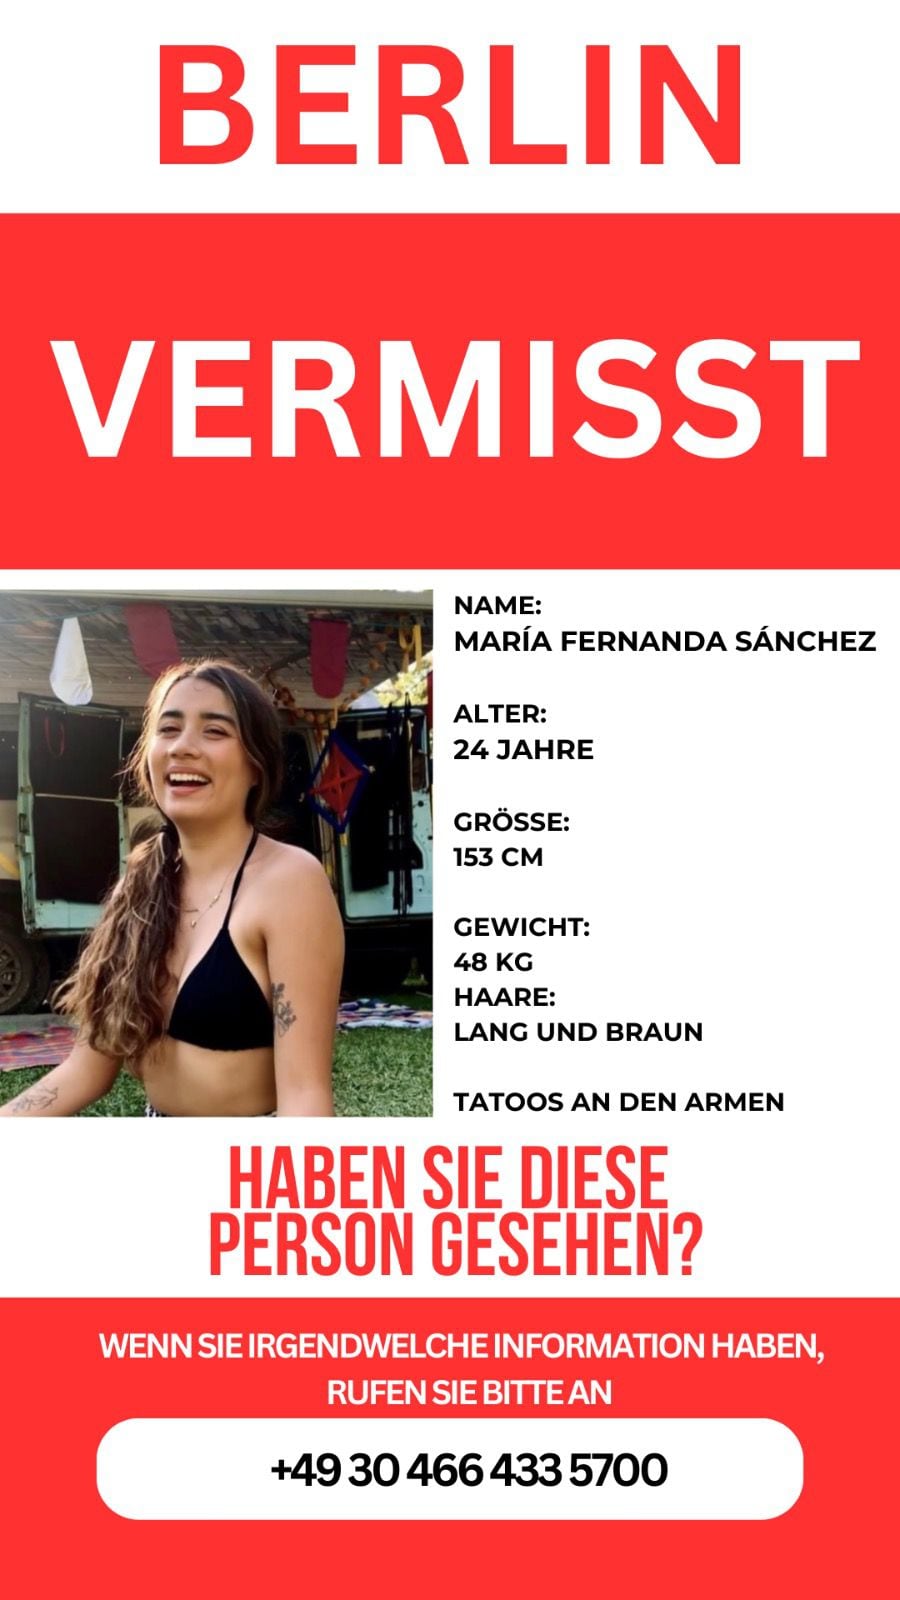 Desaparece mexicana en Alemania: quién es María Fernanda y qué se sabe sobre su paradero - Infobae